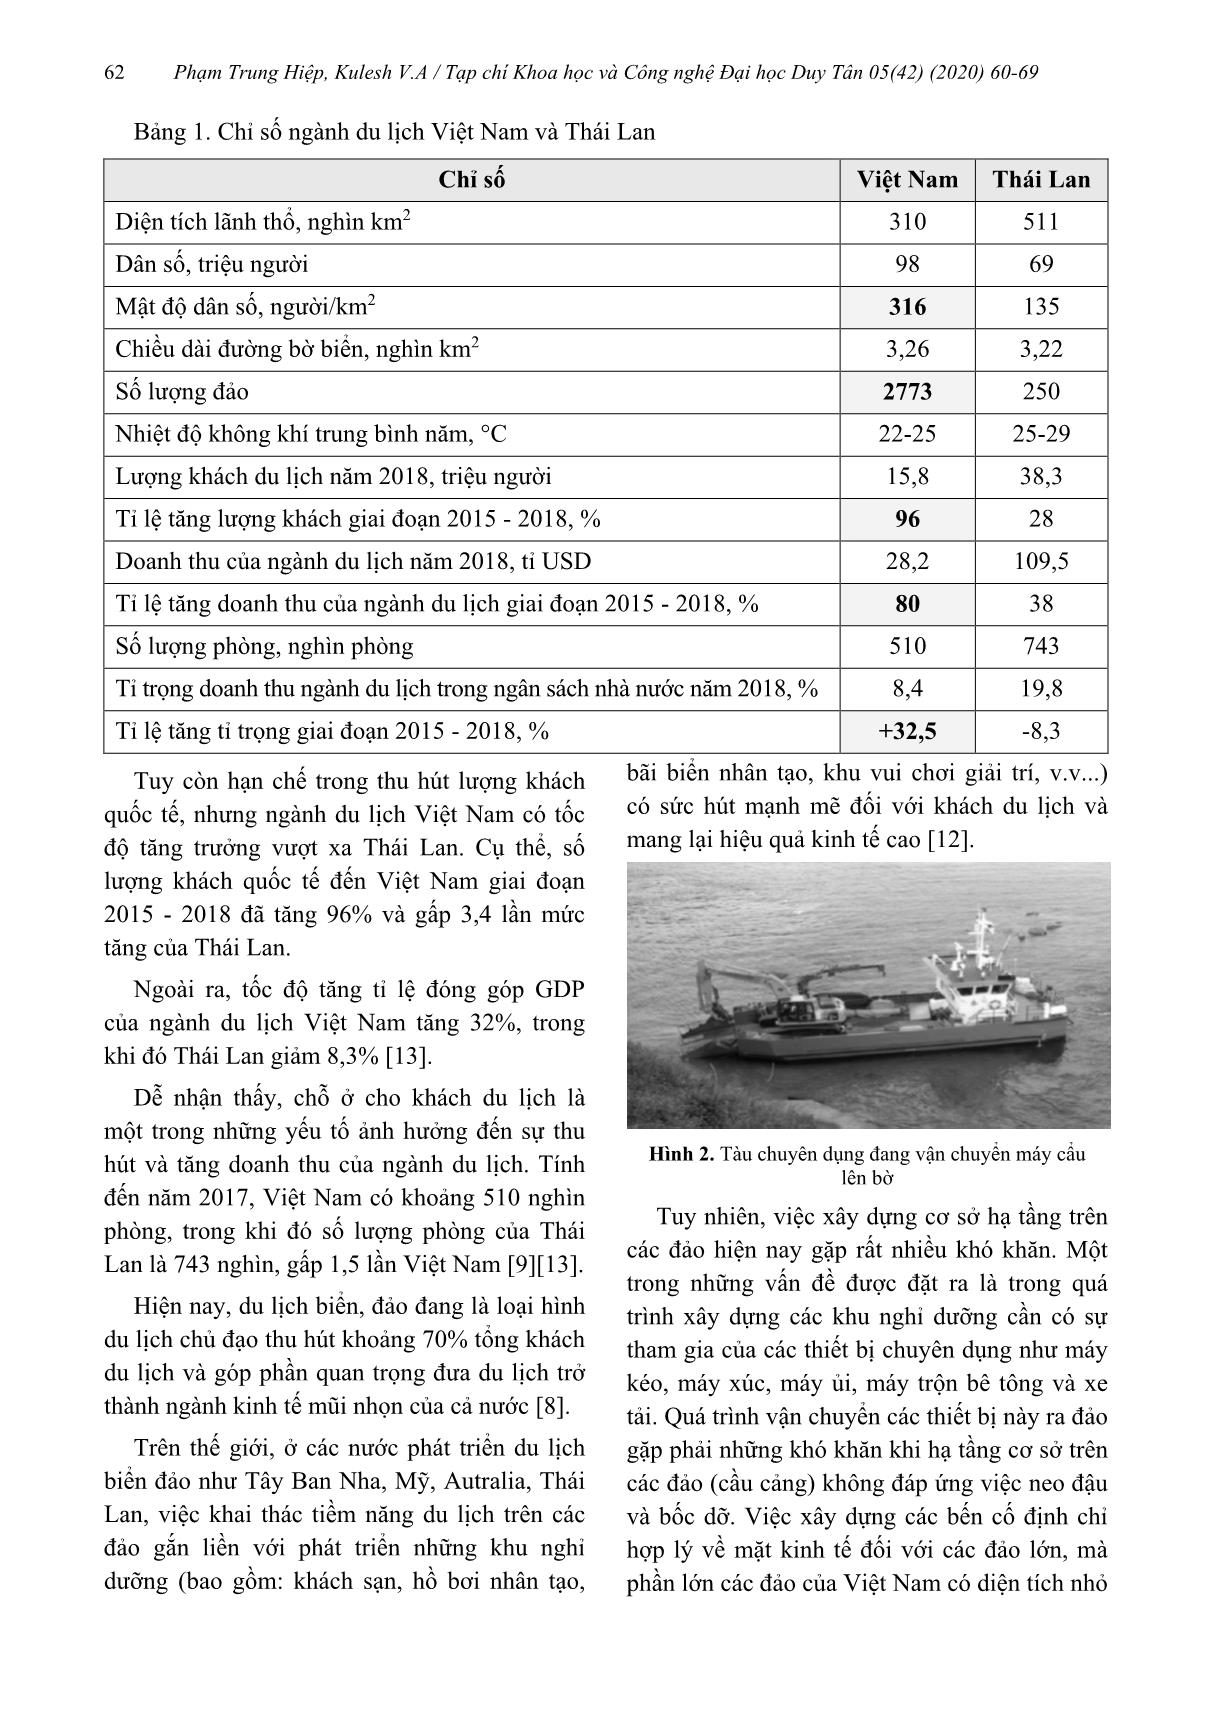 Tàu chuyên dụng và định hướng phát triển cơ sở hạ tầng du lịch biển Việt Nam trang 3